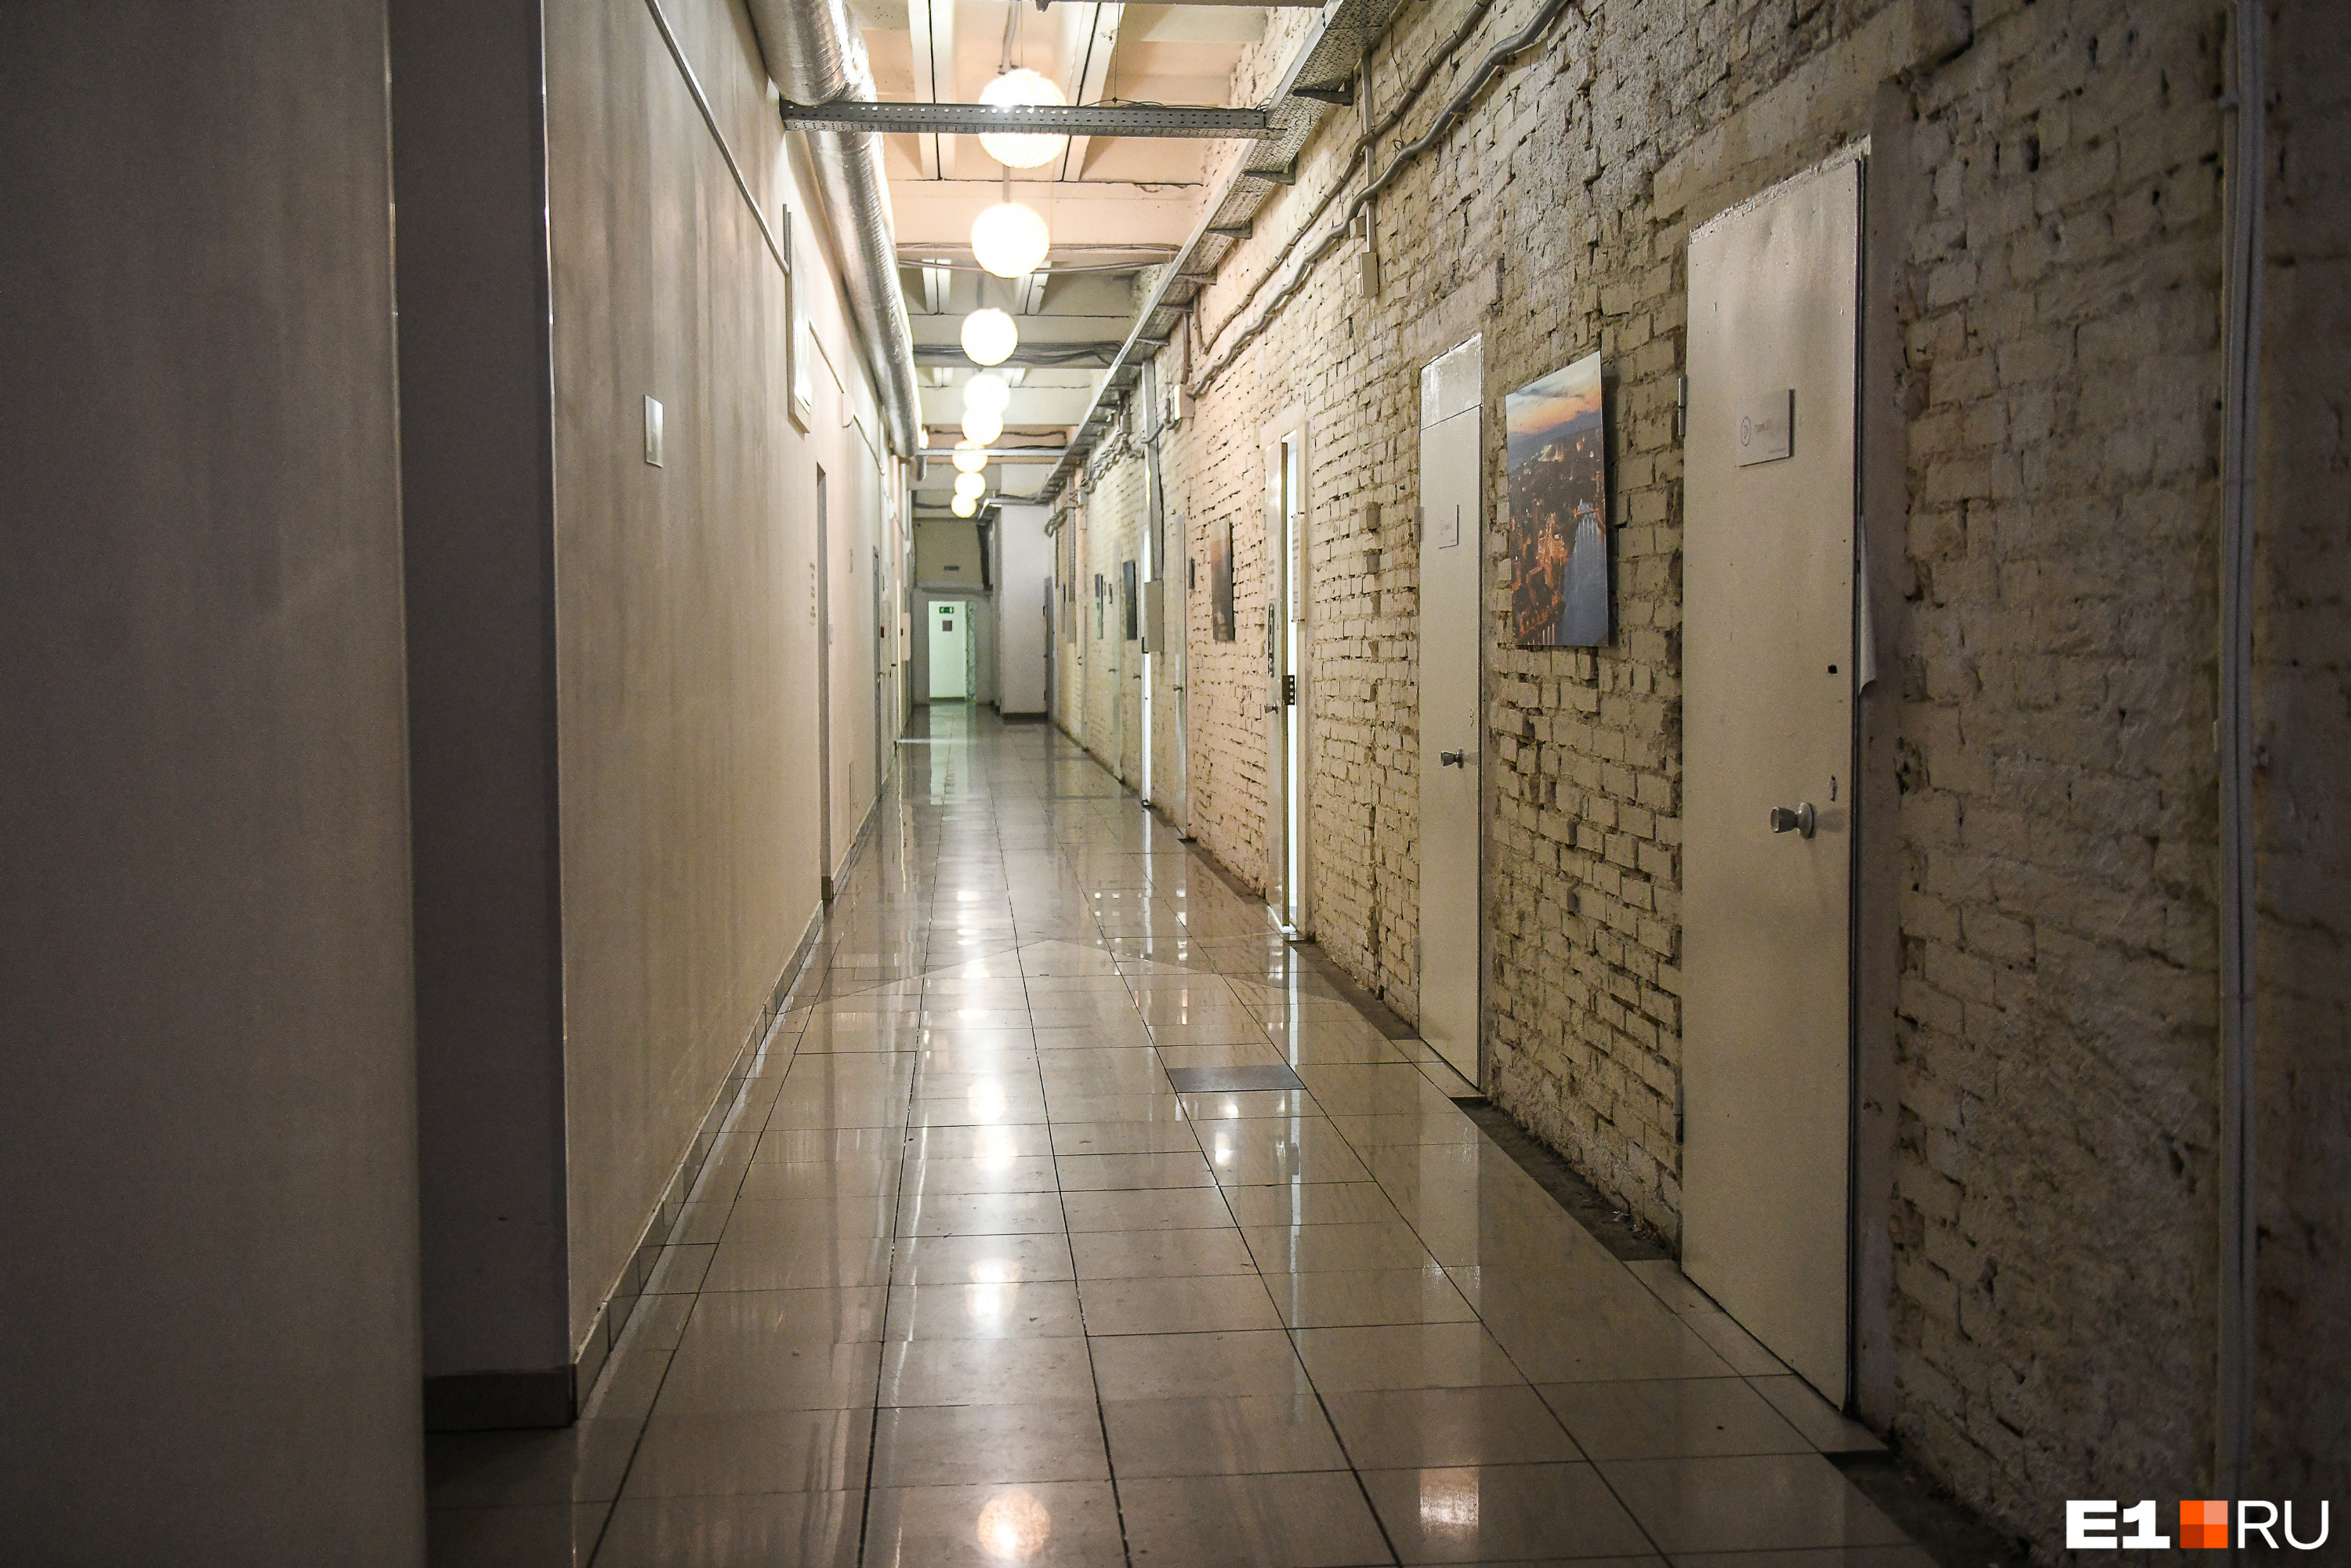 В коридорах киностудии можно заблудиться, но многочисленные арендаторы как-то там находятся